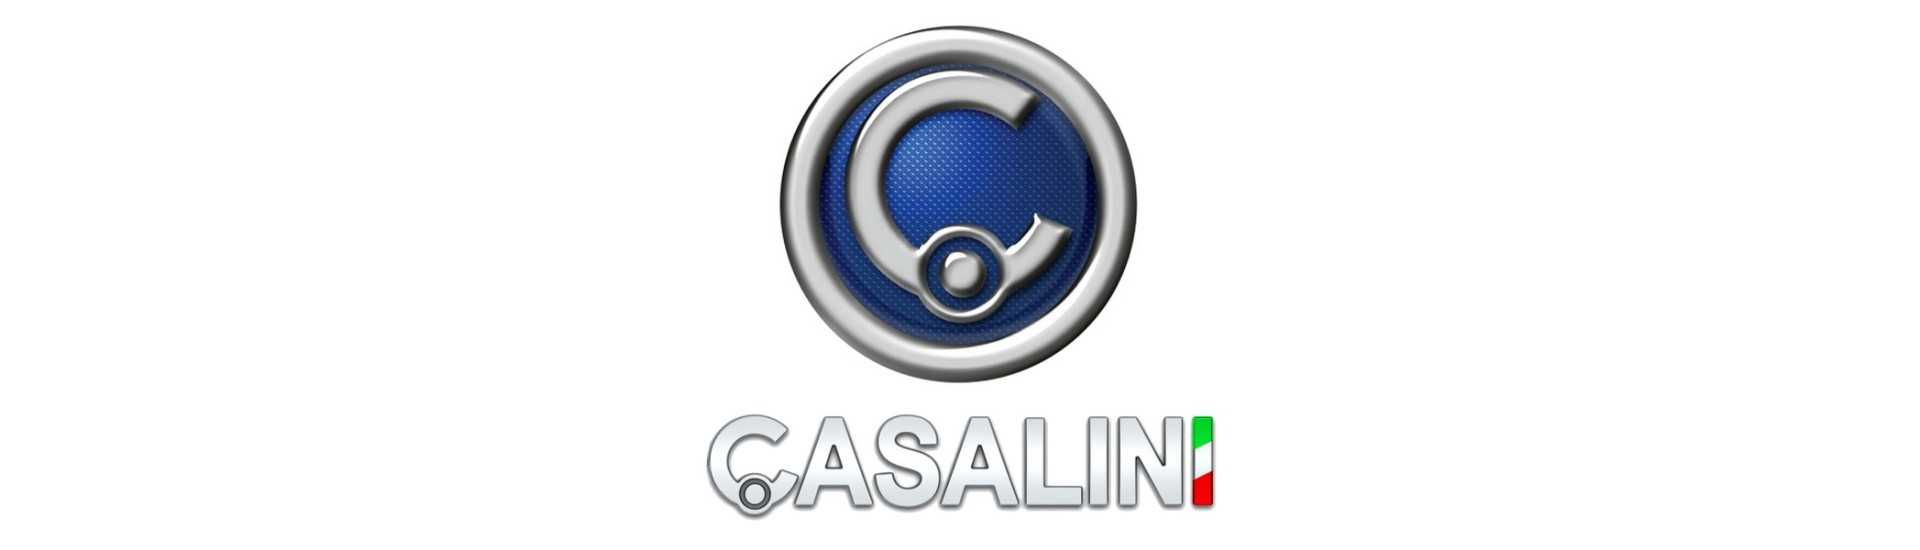 Soporte de carrocería coche al mejor precio sin carnet Casalini